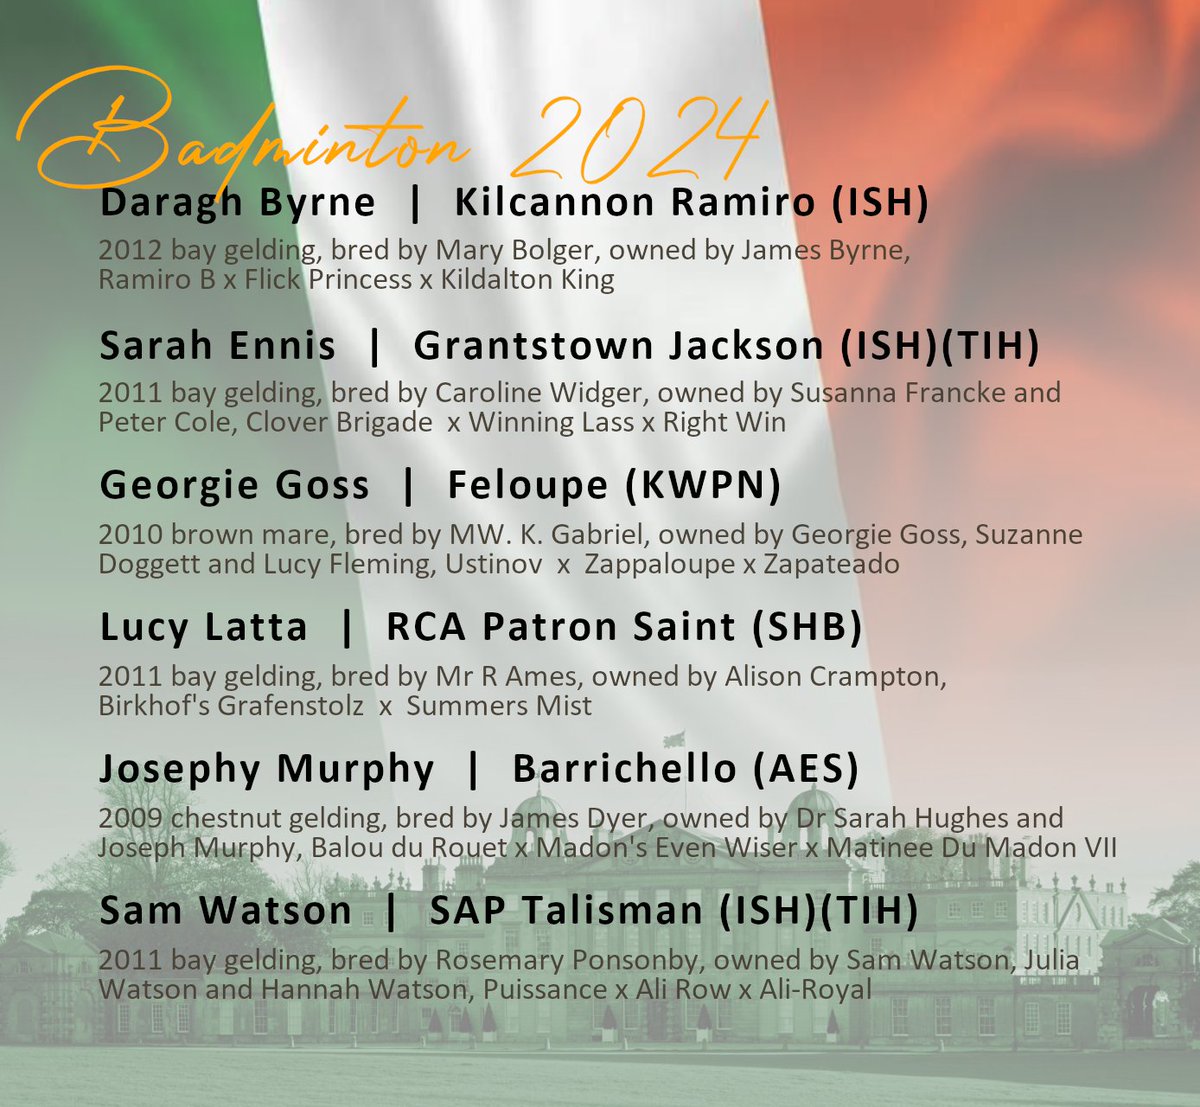 🇮🇪 Badminton 2024 - the Irish contingent 🇮🇪